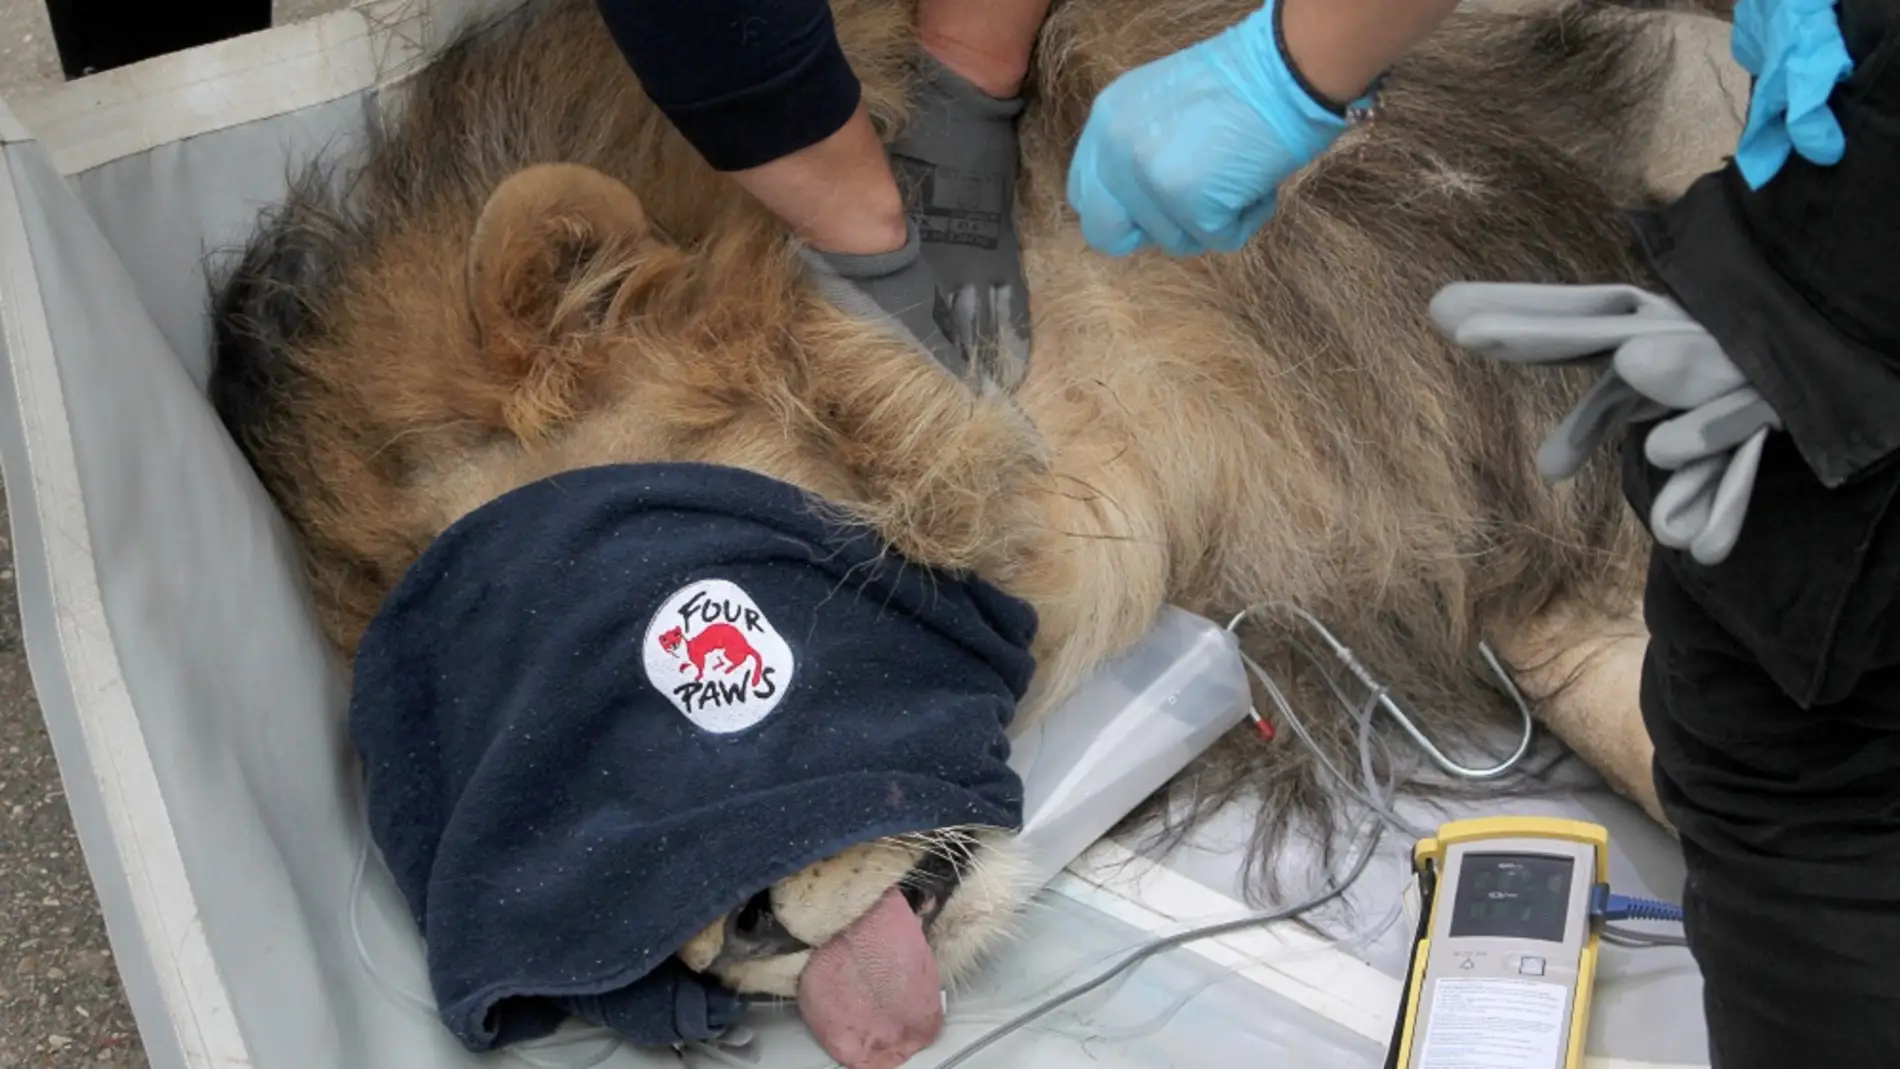 Imagen del león rescatado de un zoológico de Albania